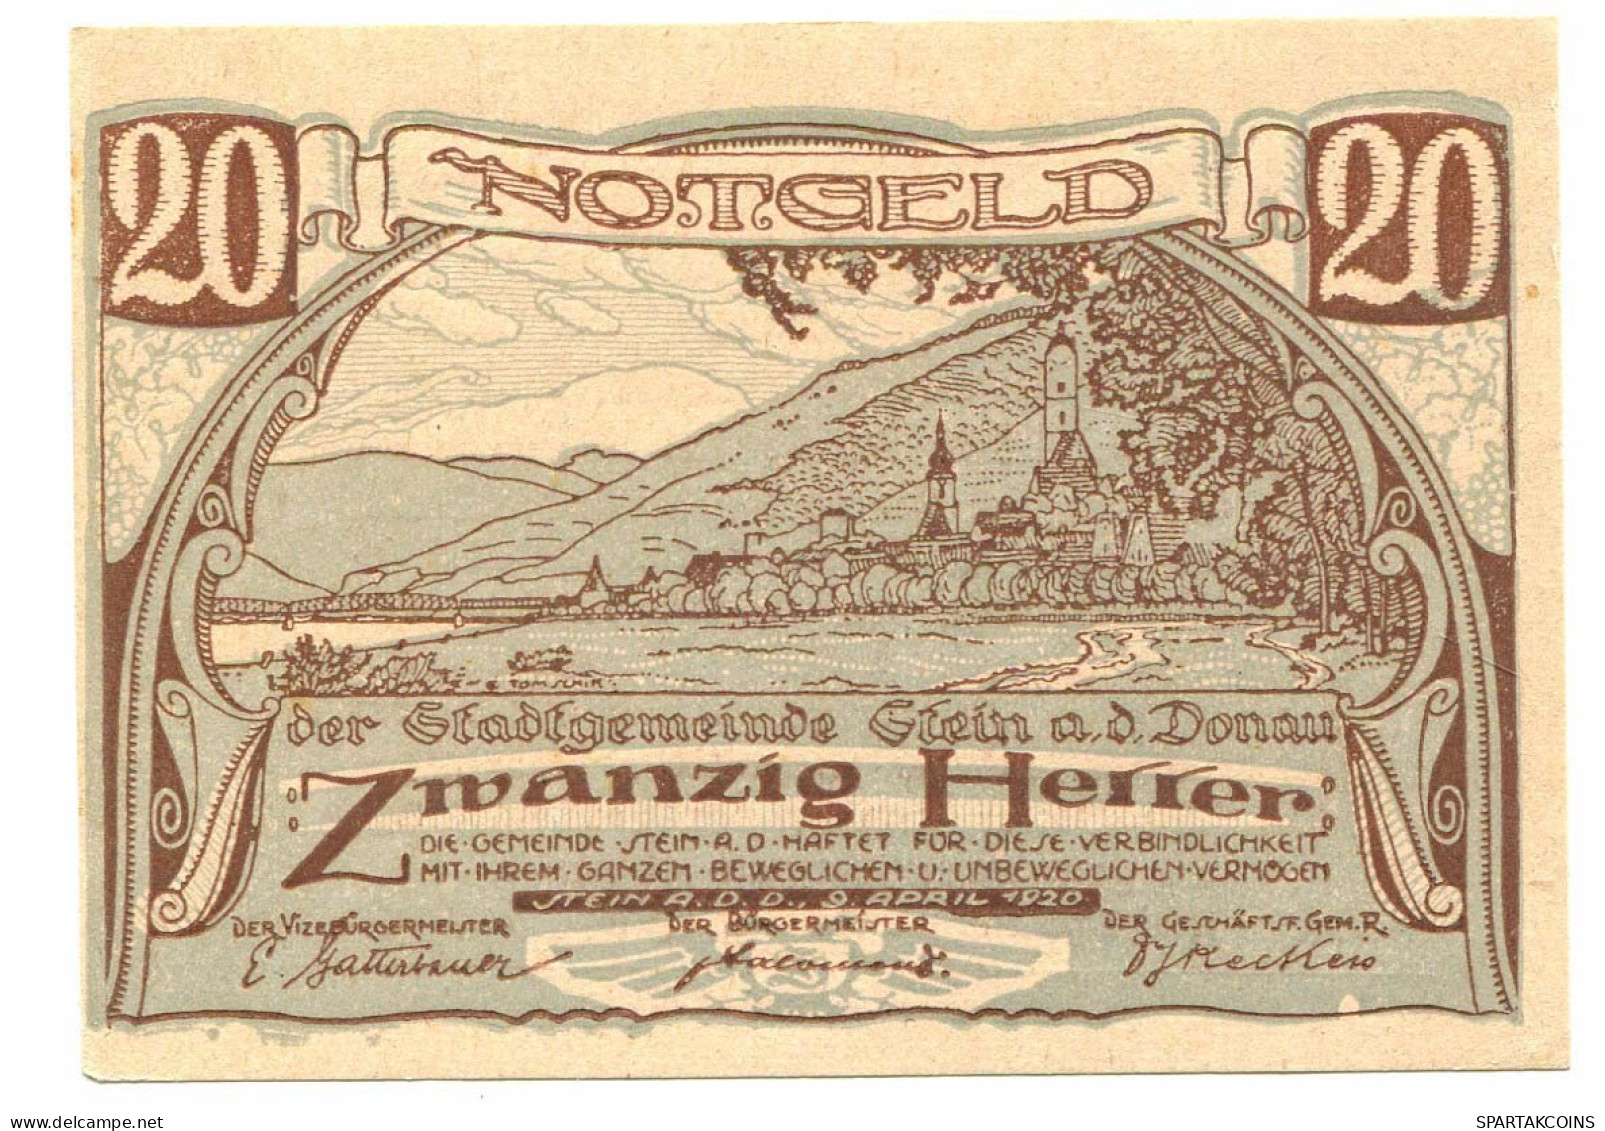 20 Heller 1920 STEIN Österreich UNC Notgeld Papiergeld Banknote #P10320 - [11] Local Banknote Issues